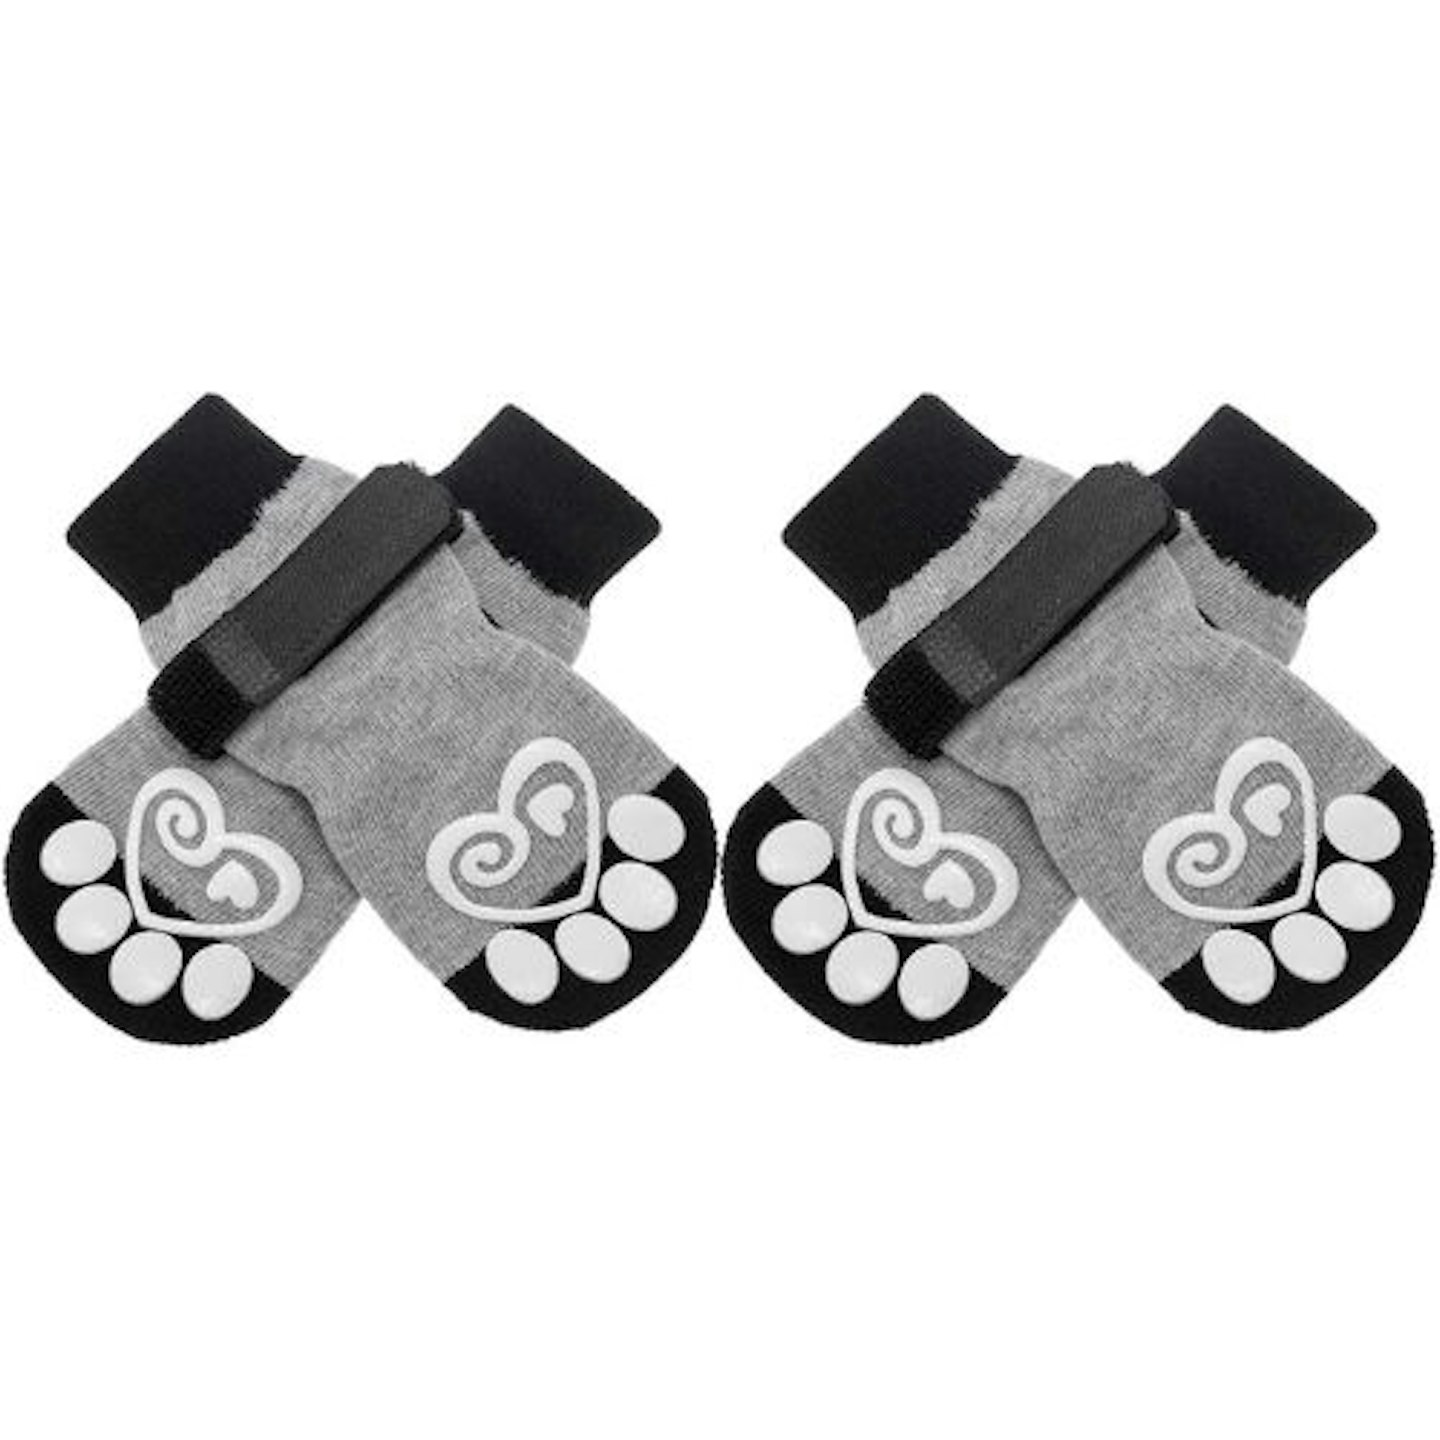 KOOLTAIL Dog Socks